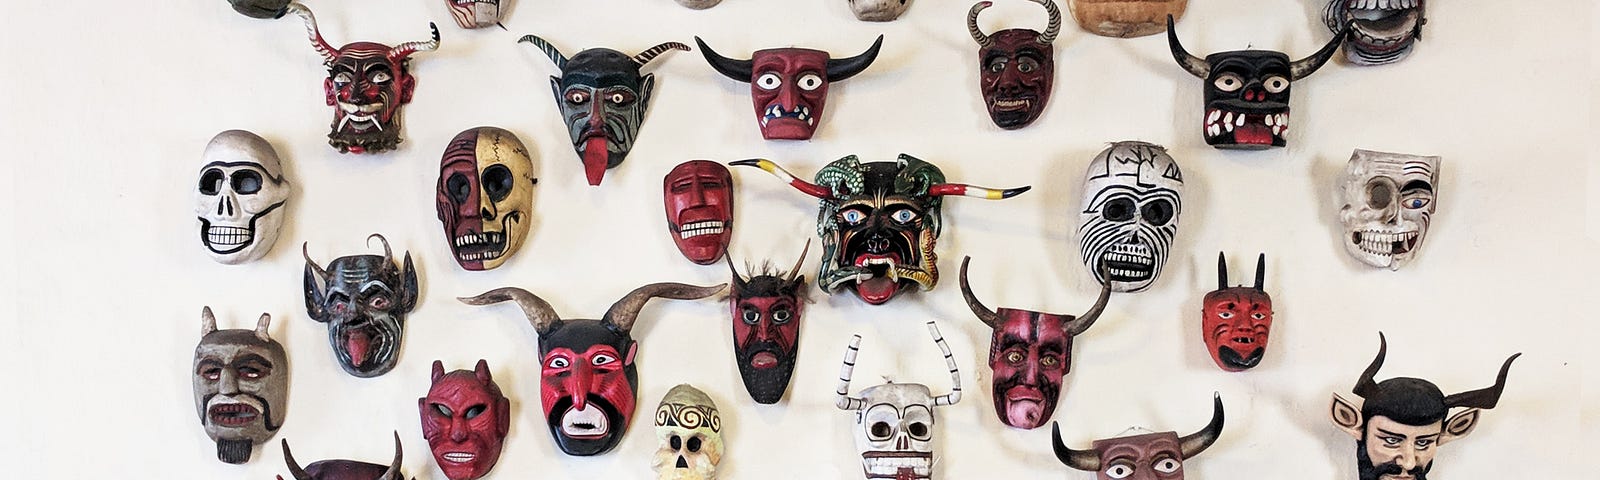 Devil masks